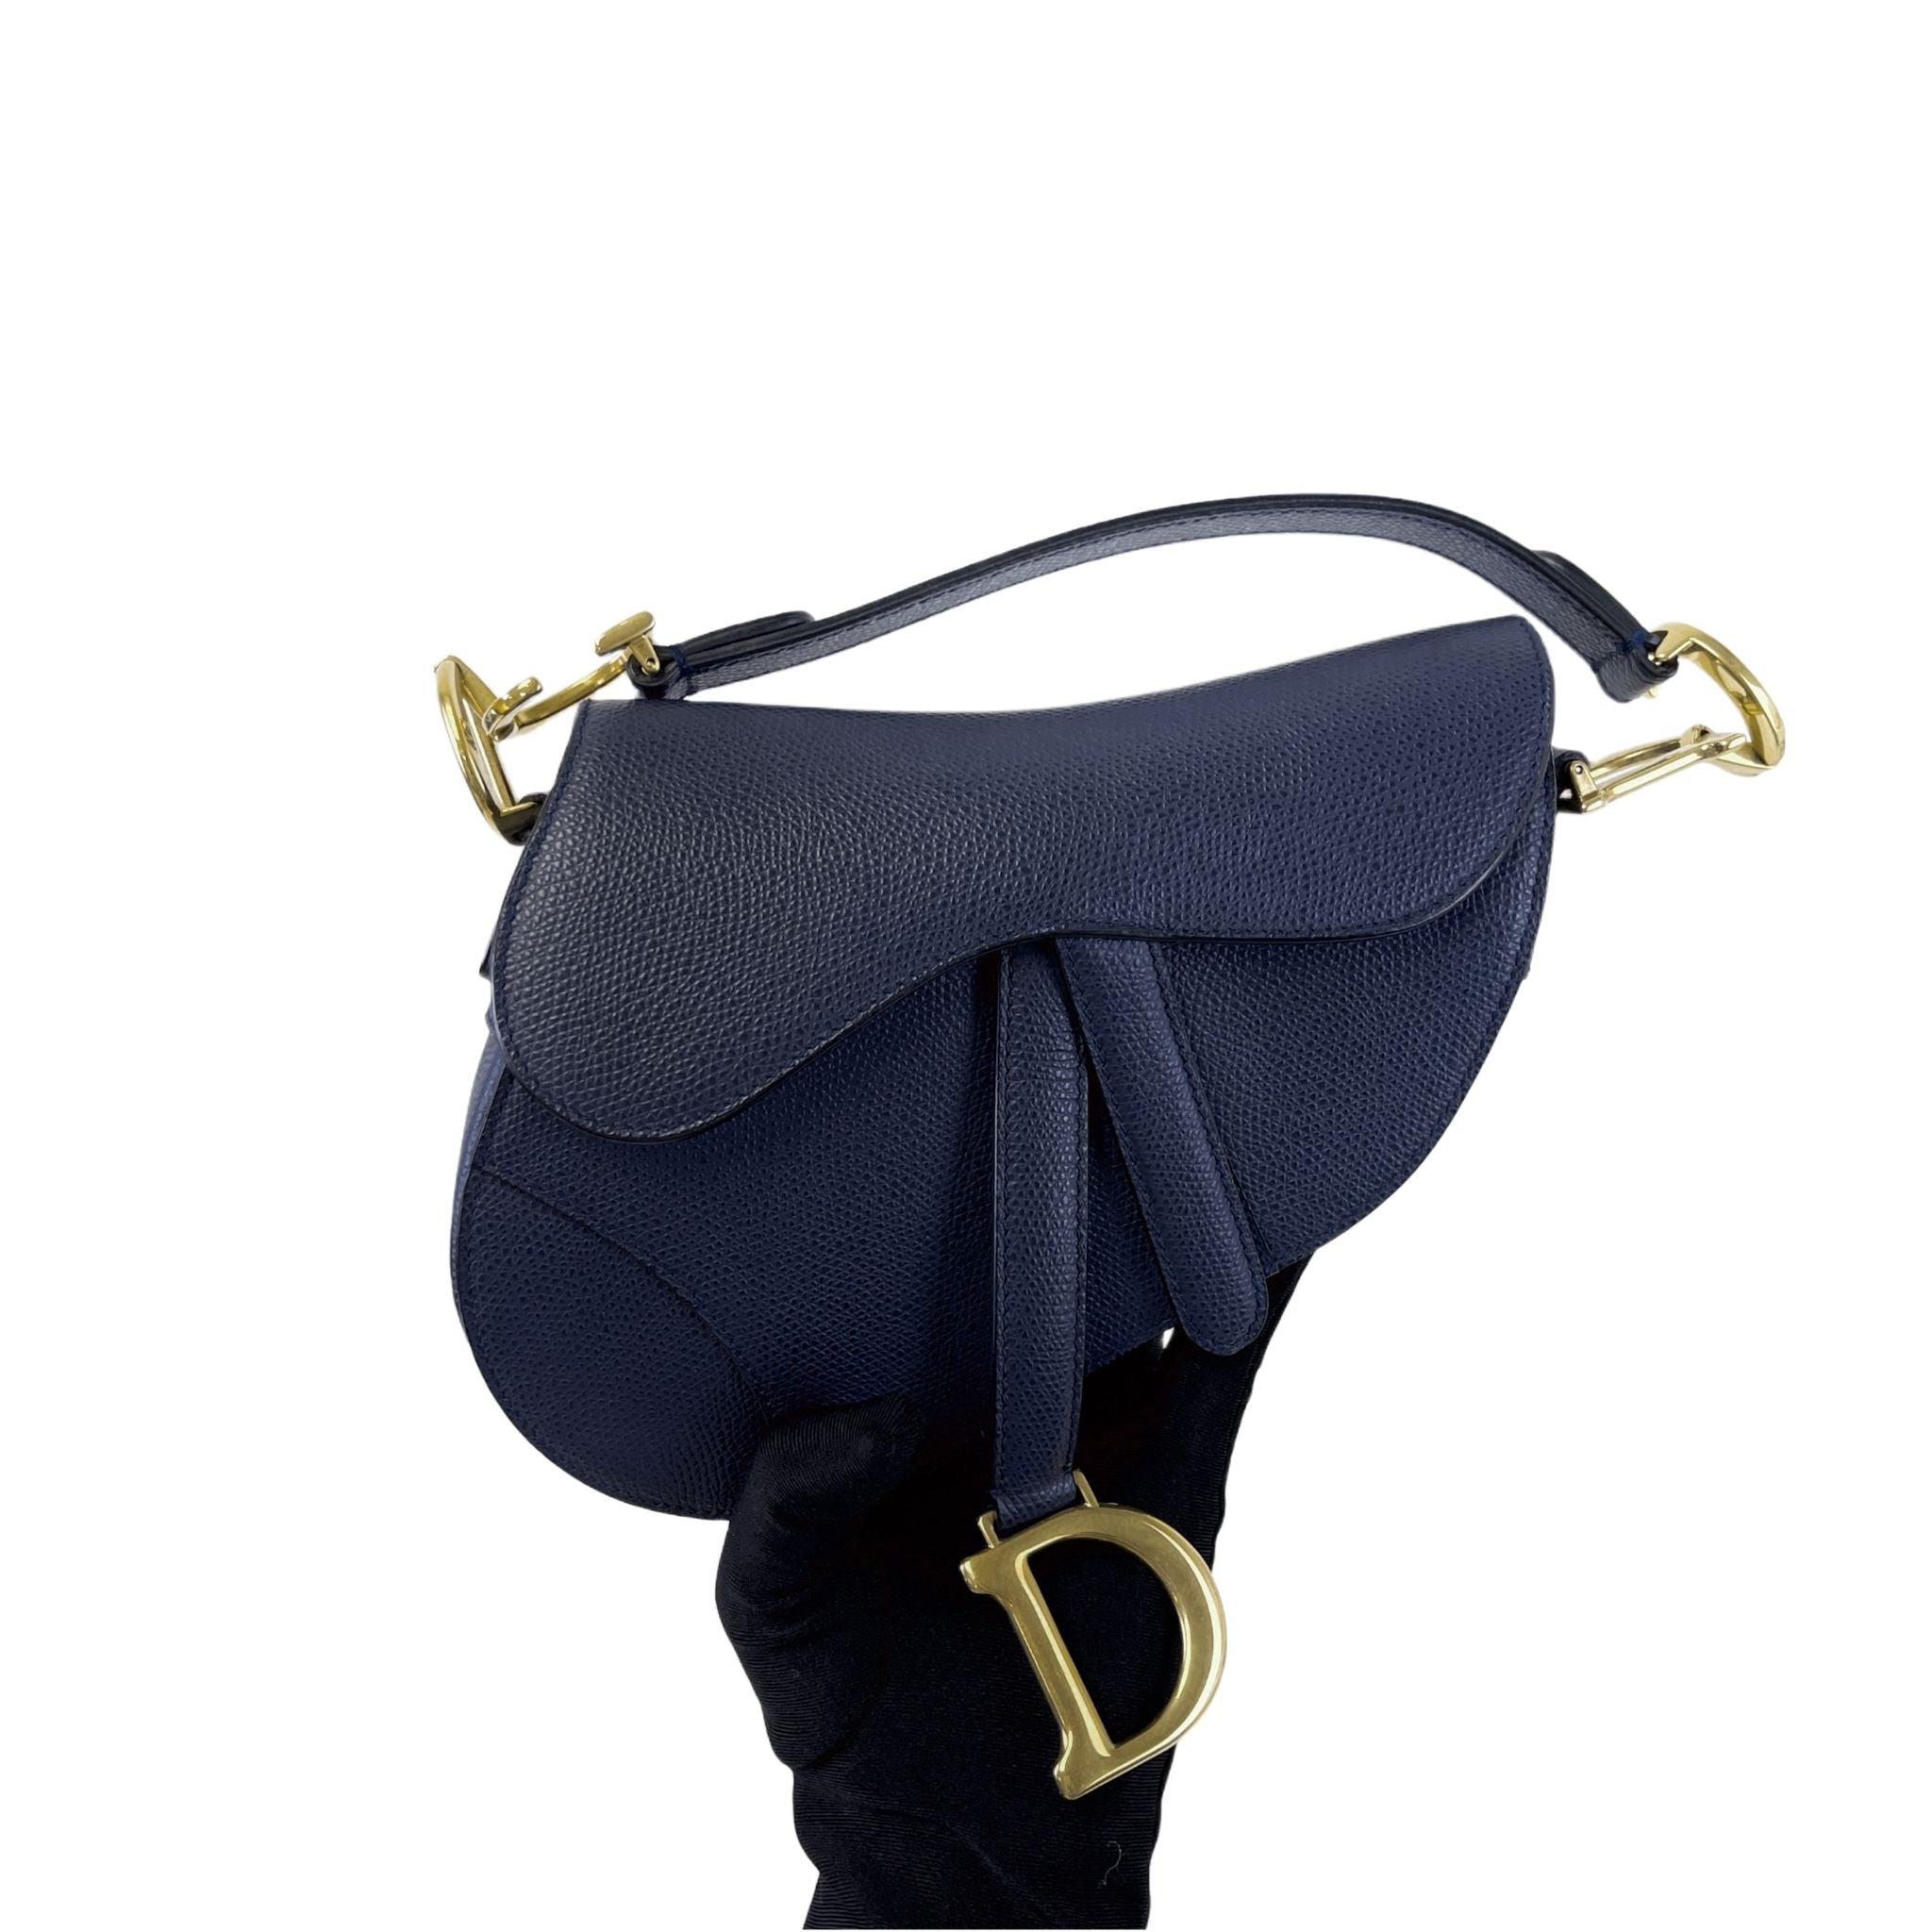 Christian Dior Saddle Bag Small